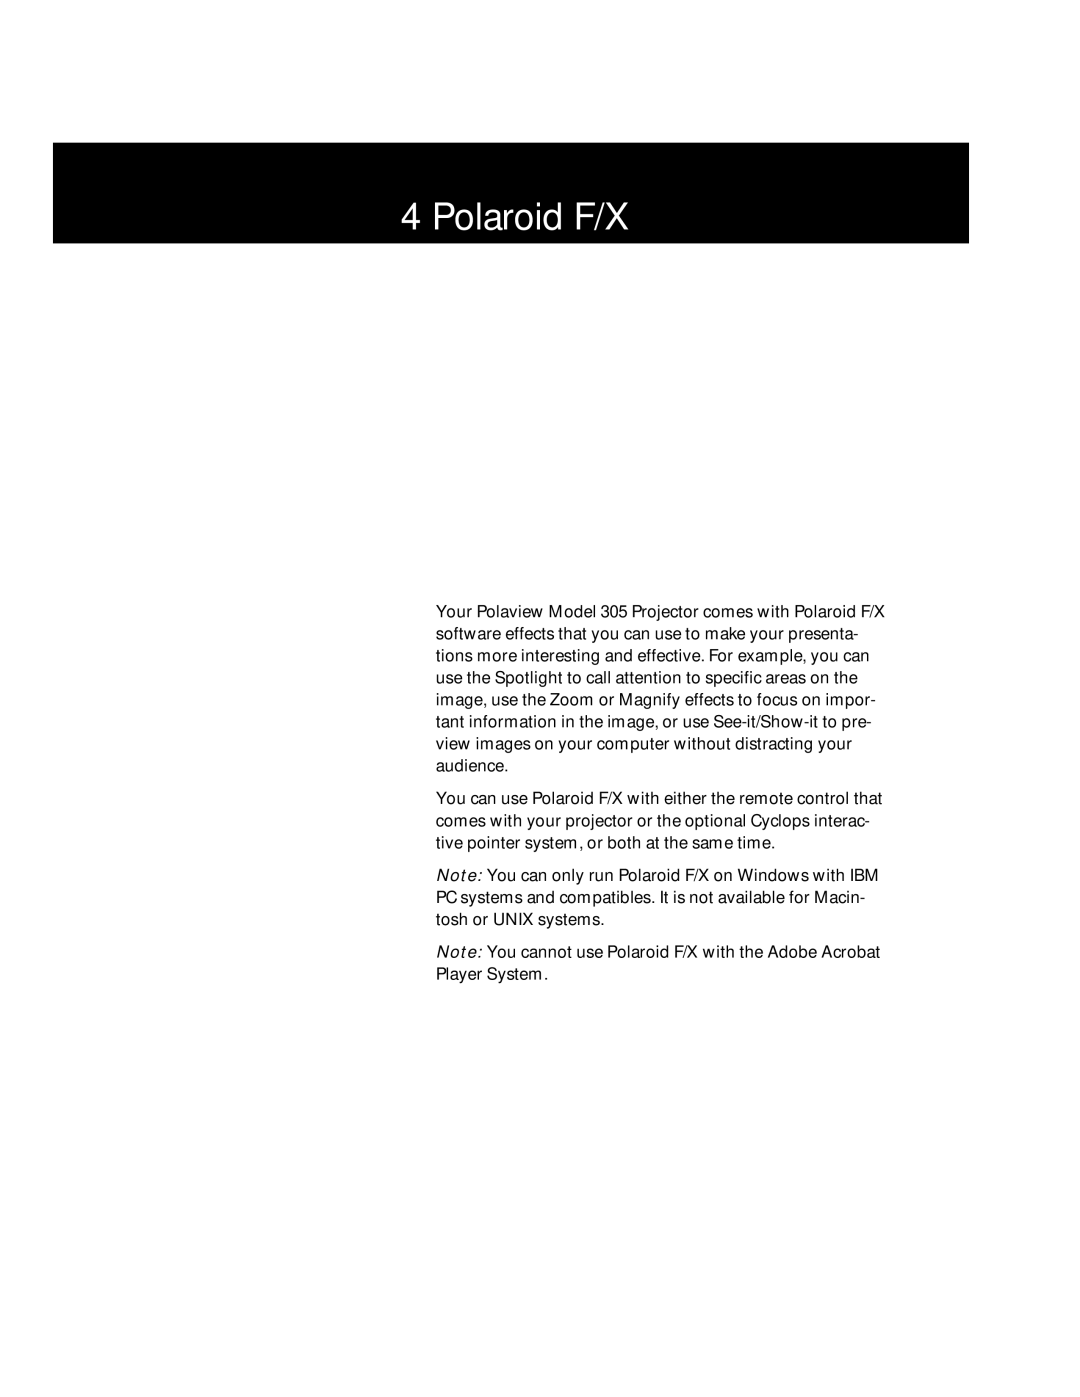 Polaroid Polaview 305 manual Polaroid F/X 